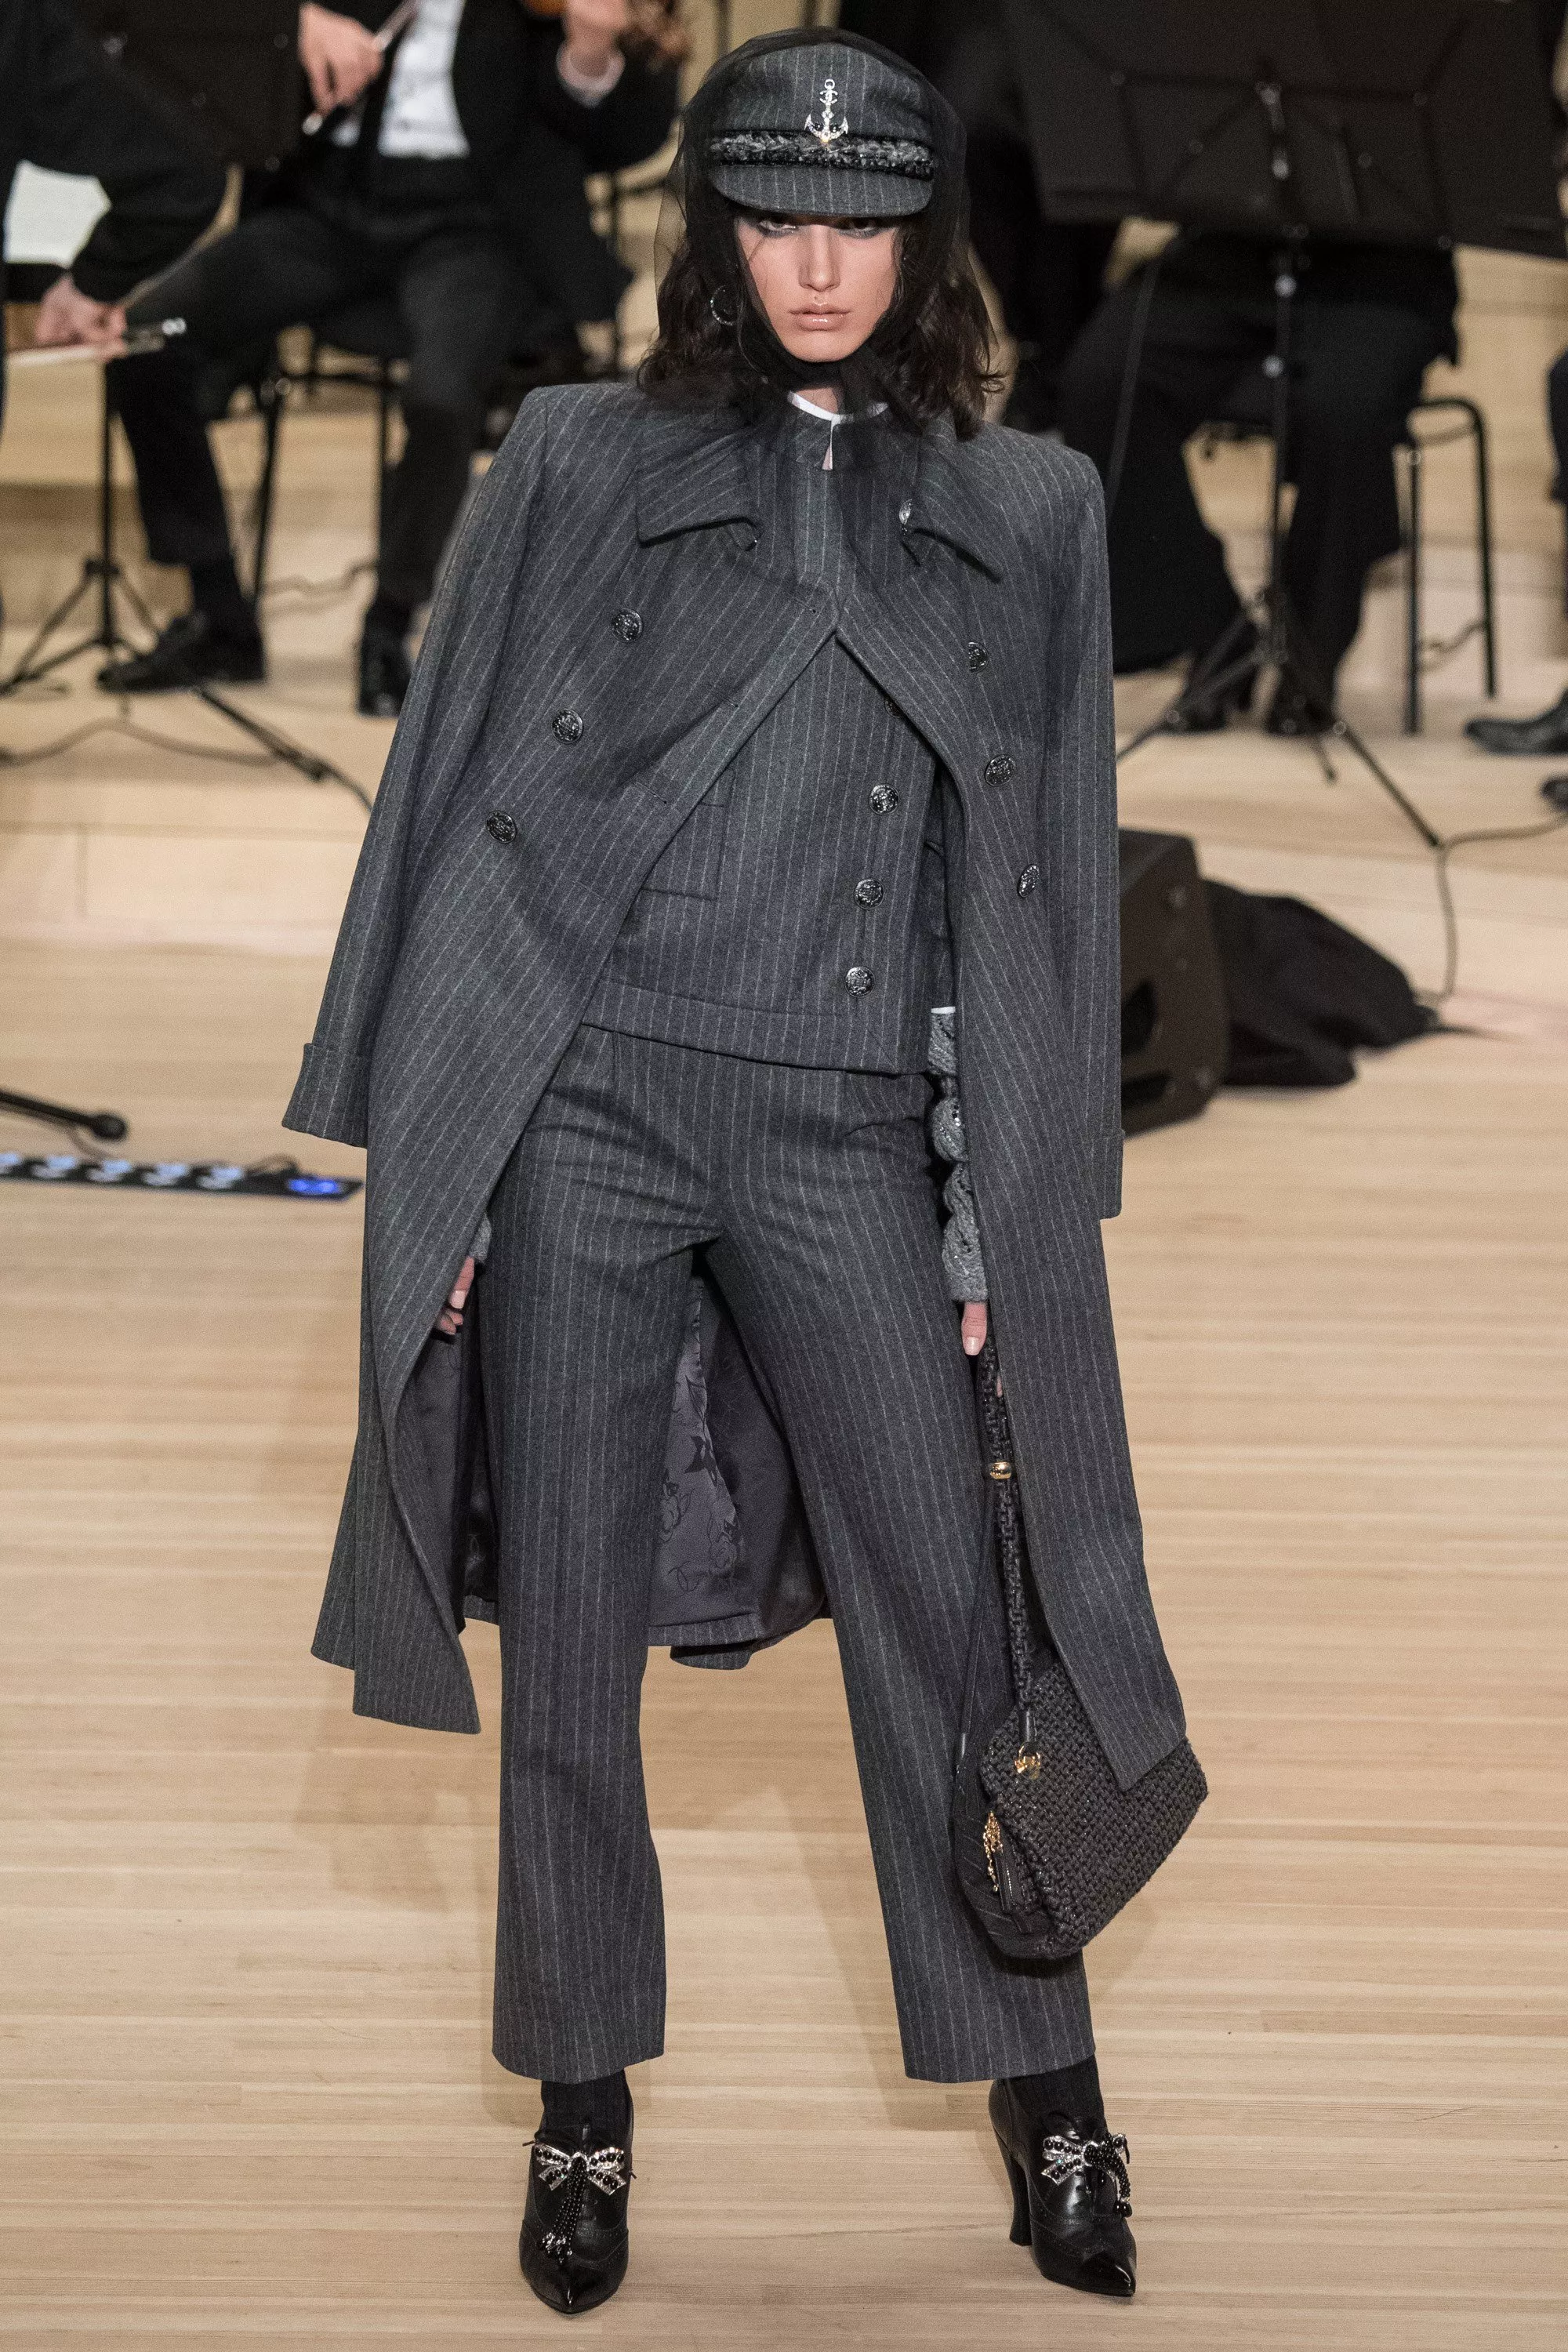 مجموعة Chanel Métiers d’Art التحضيريّة لخريف 2018: عودة إلى جذور Karl Lagerfeld الألمانيّة